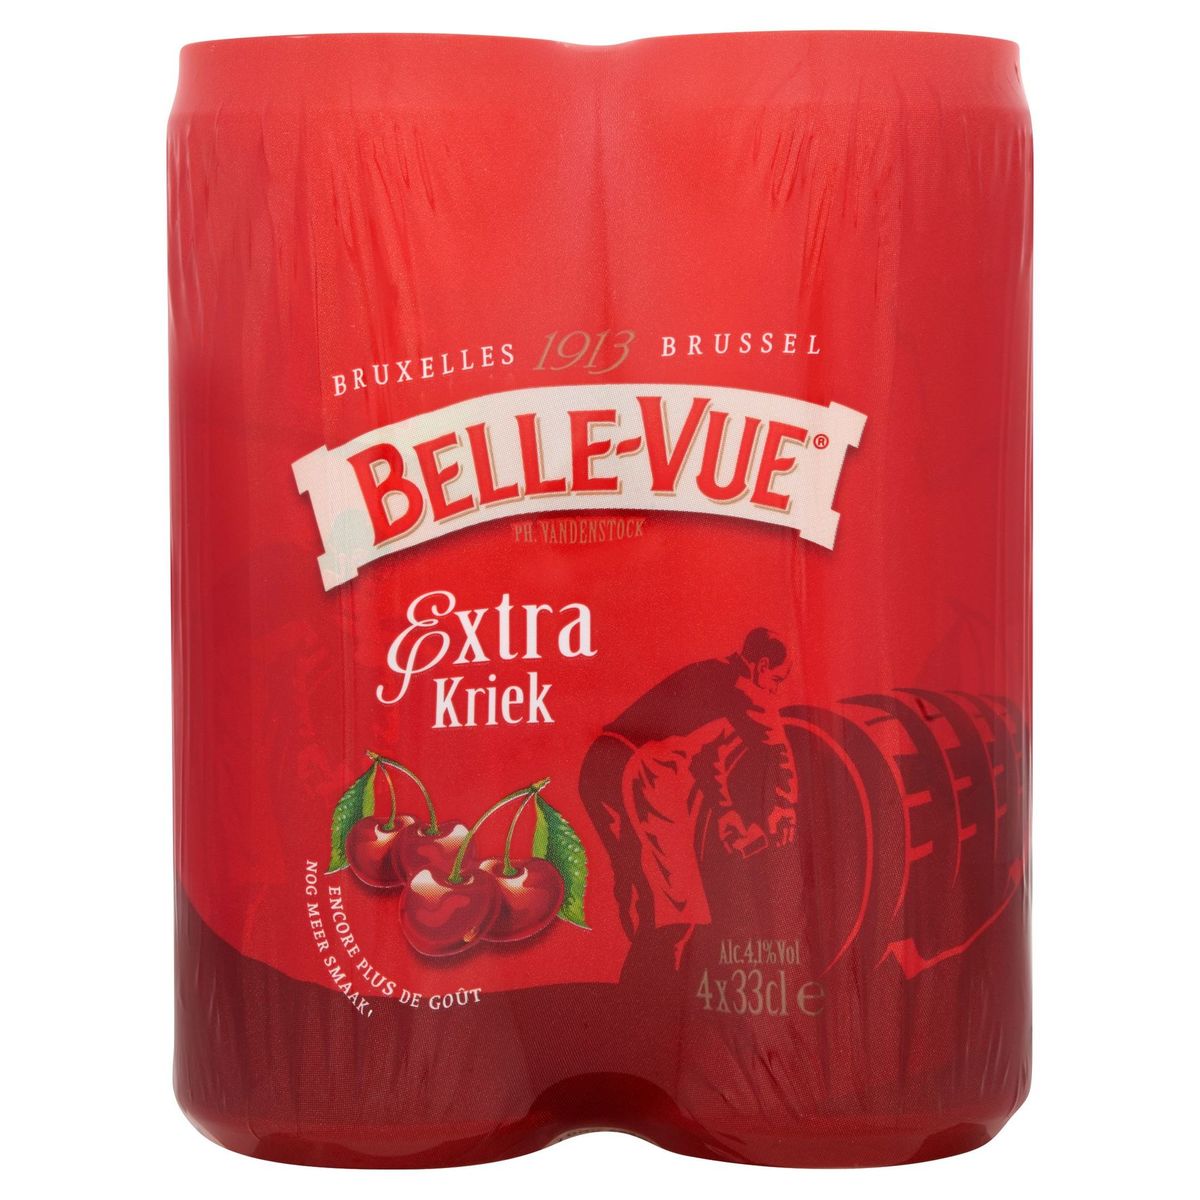 Belle-Vue Extra Kriek 4 Boîtes 33 cl